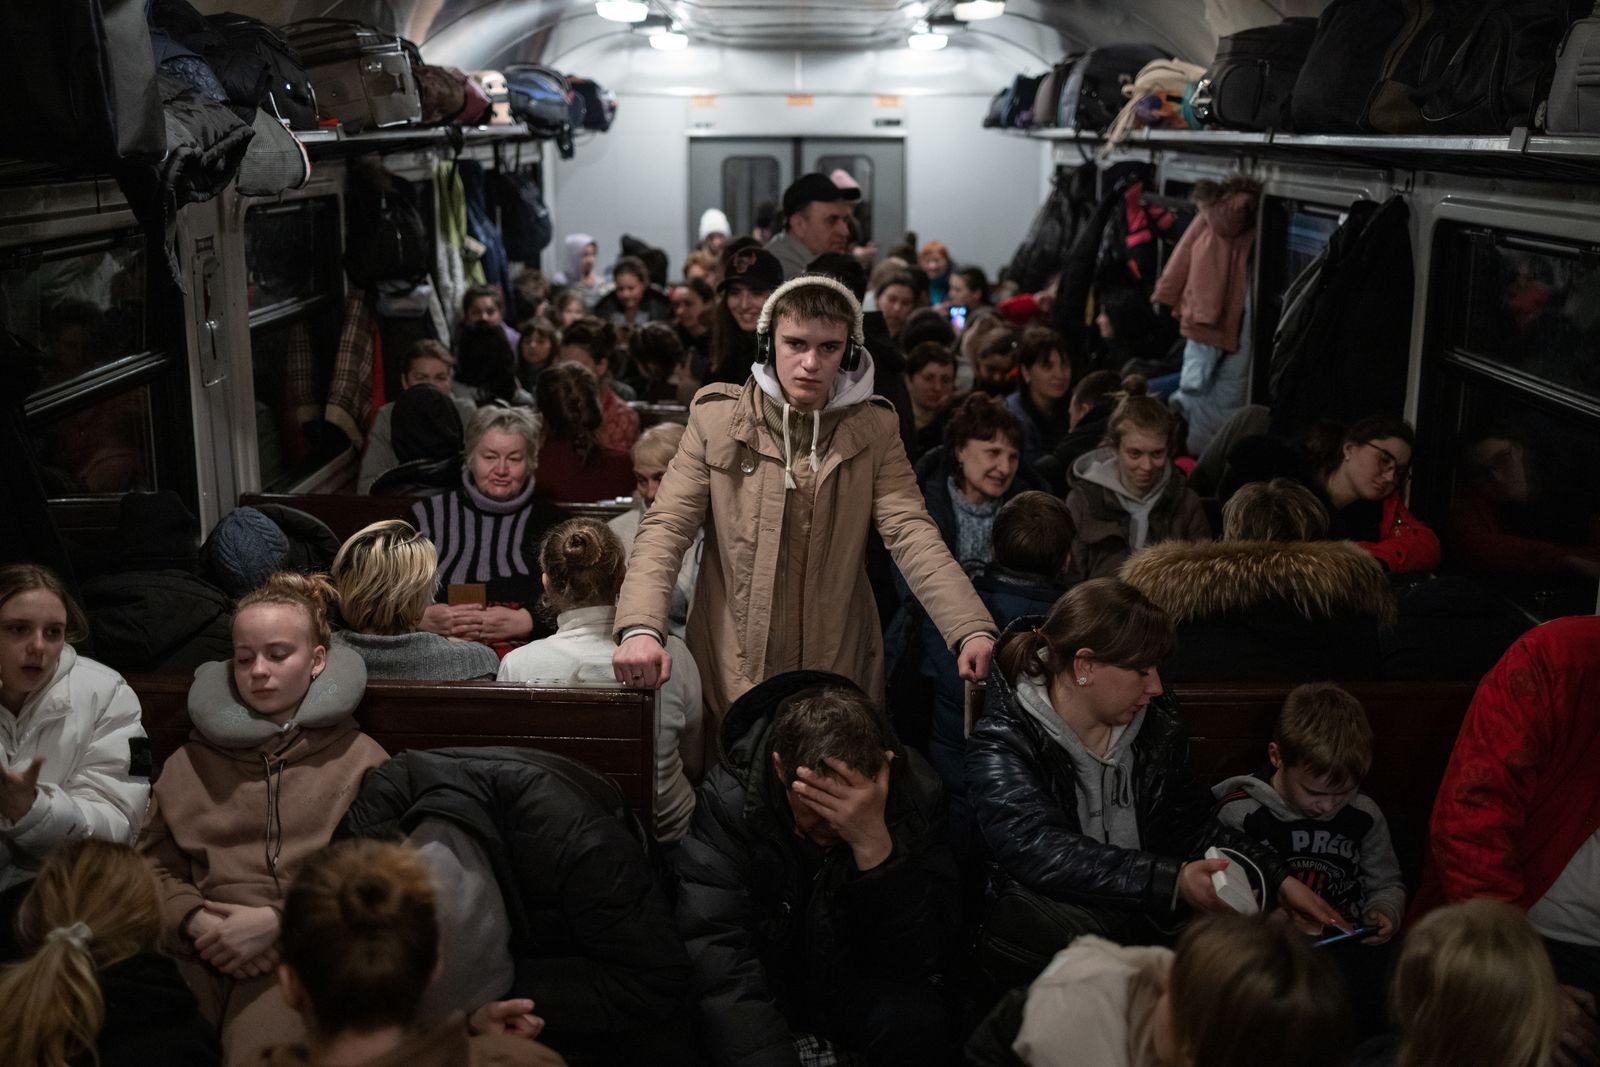 Ukraine to Poland, Crowded Train Journey